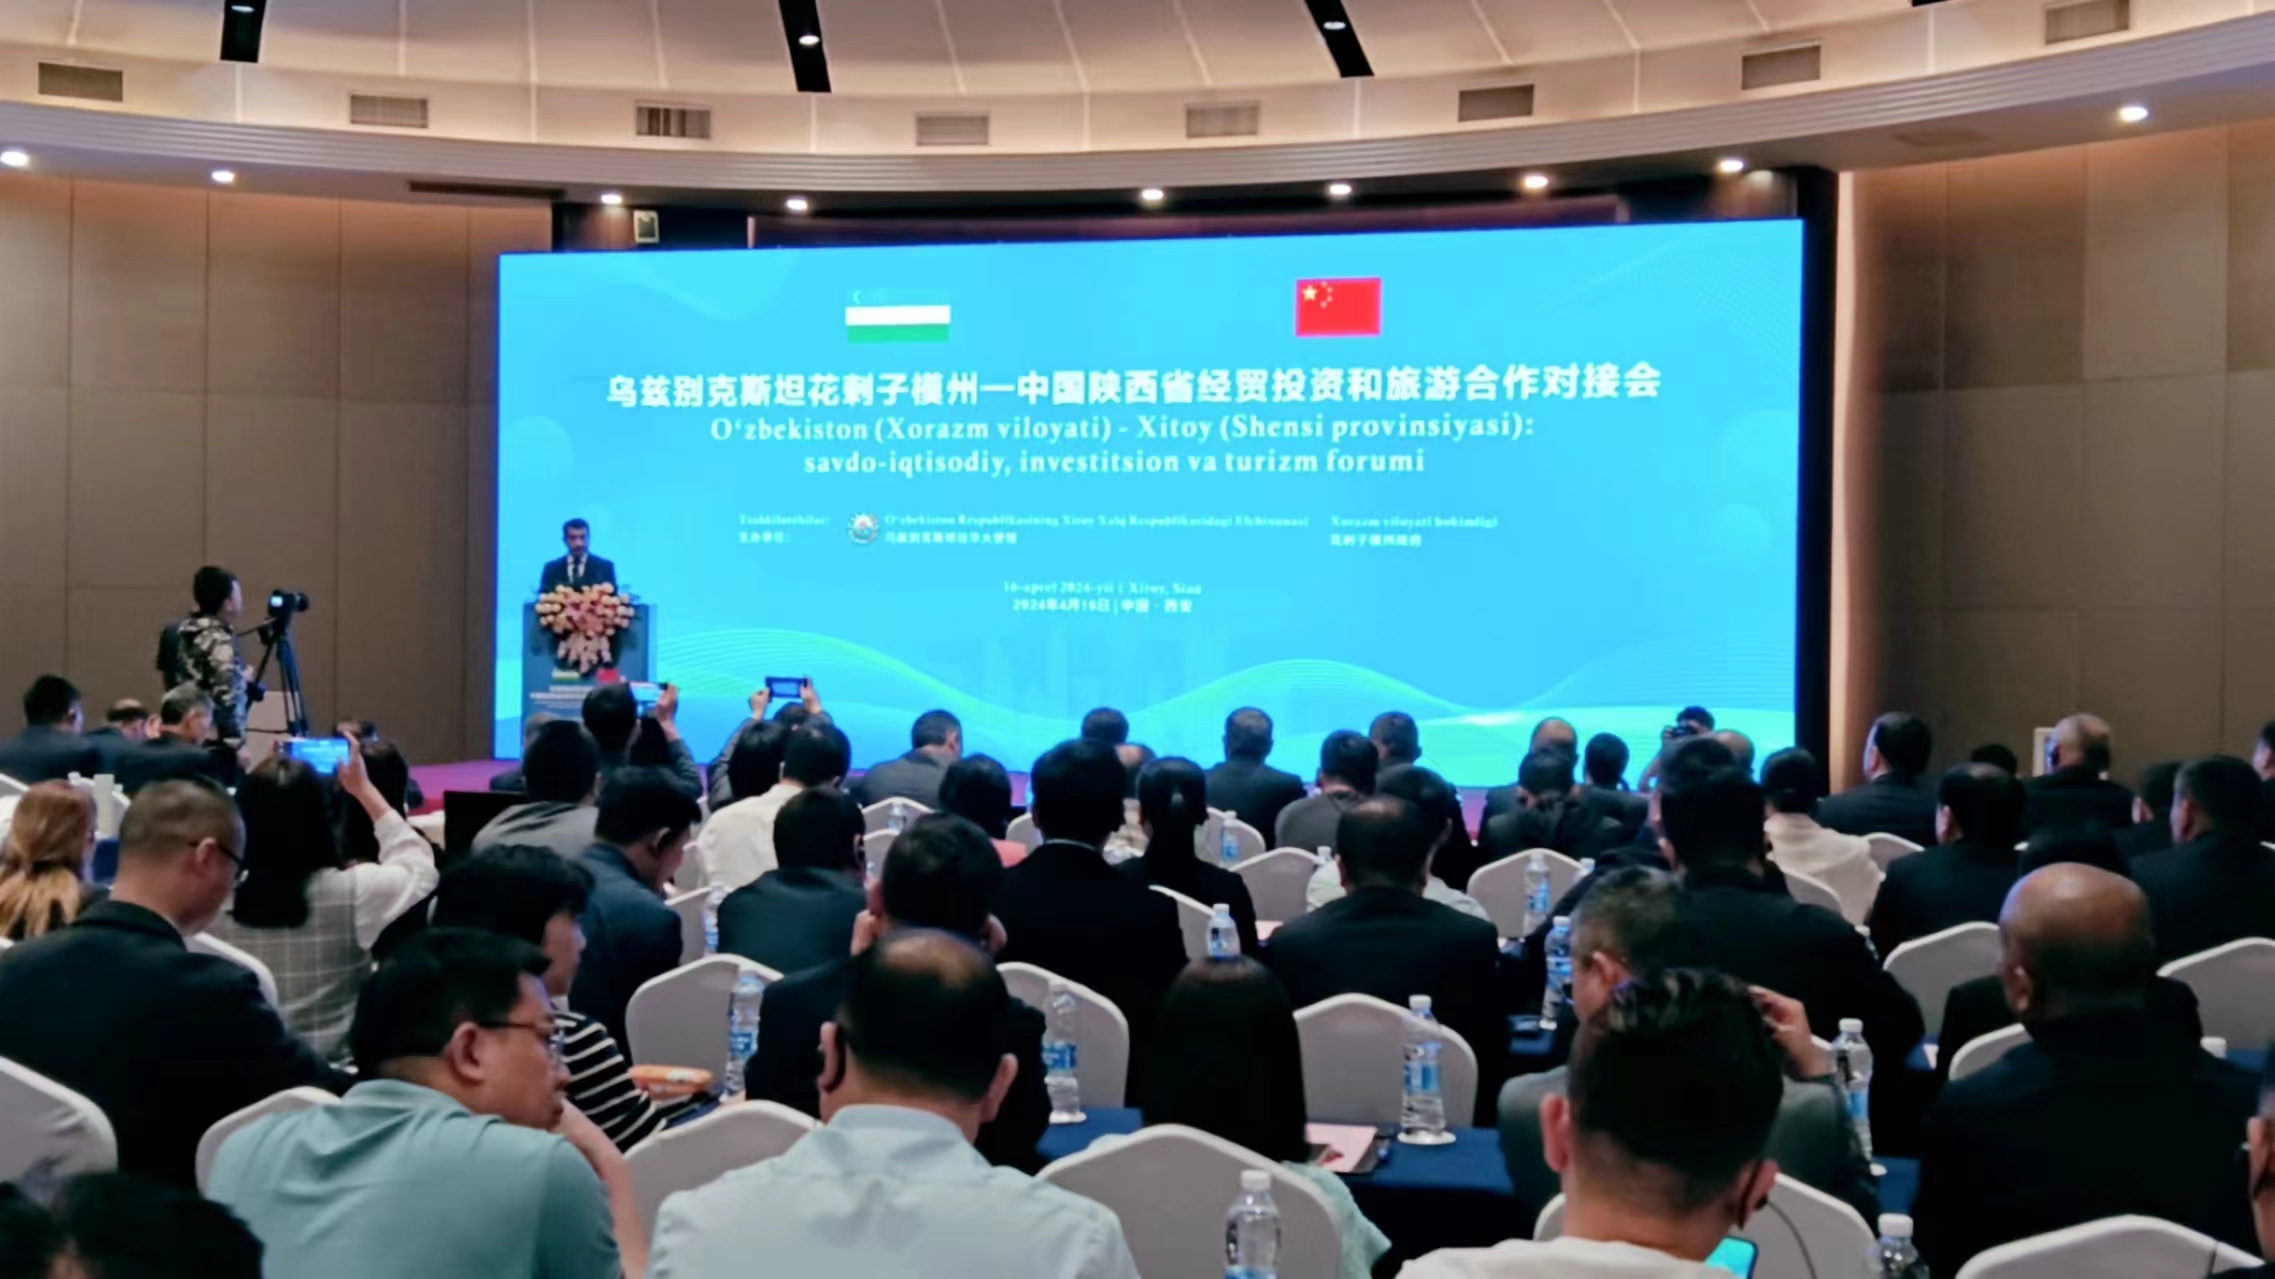 烏茲別克斯坦花剌子模州—中國陝西省經貿投資和旅遊合作對接會在西安舉辦